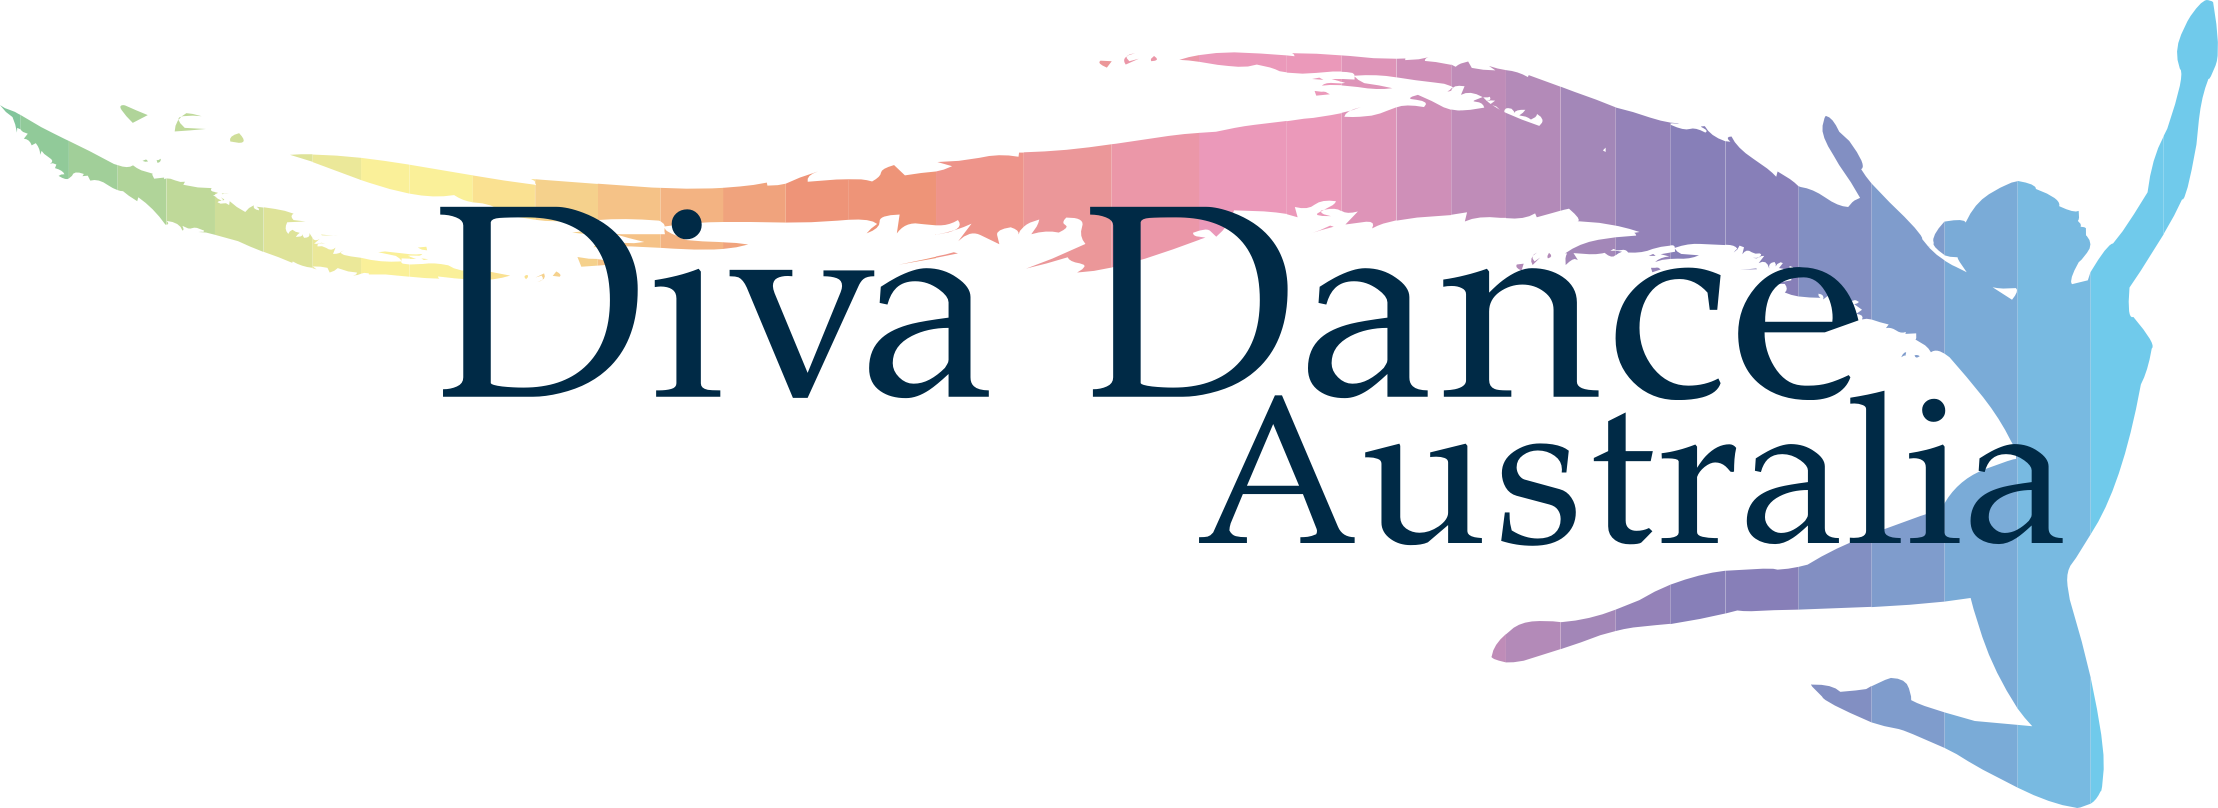 Diva Dance Australia Returns for Season 2